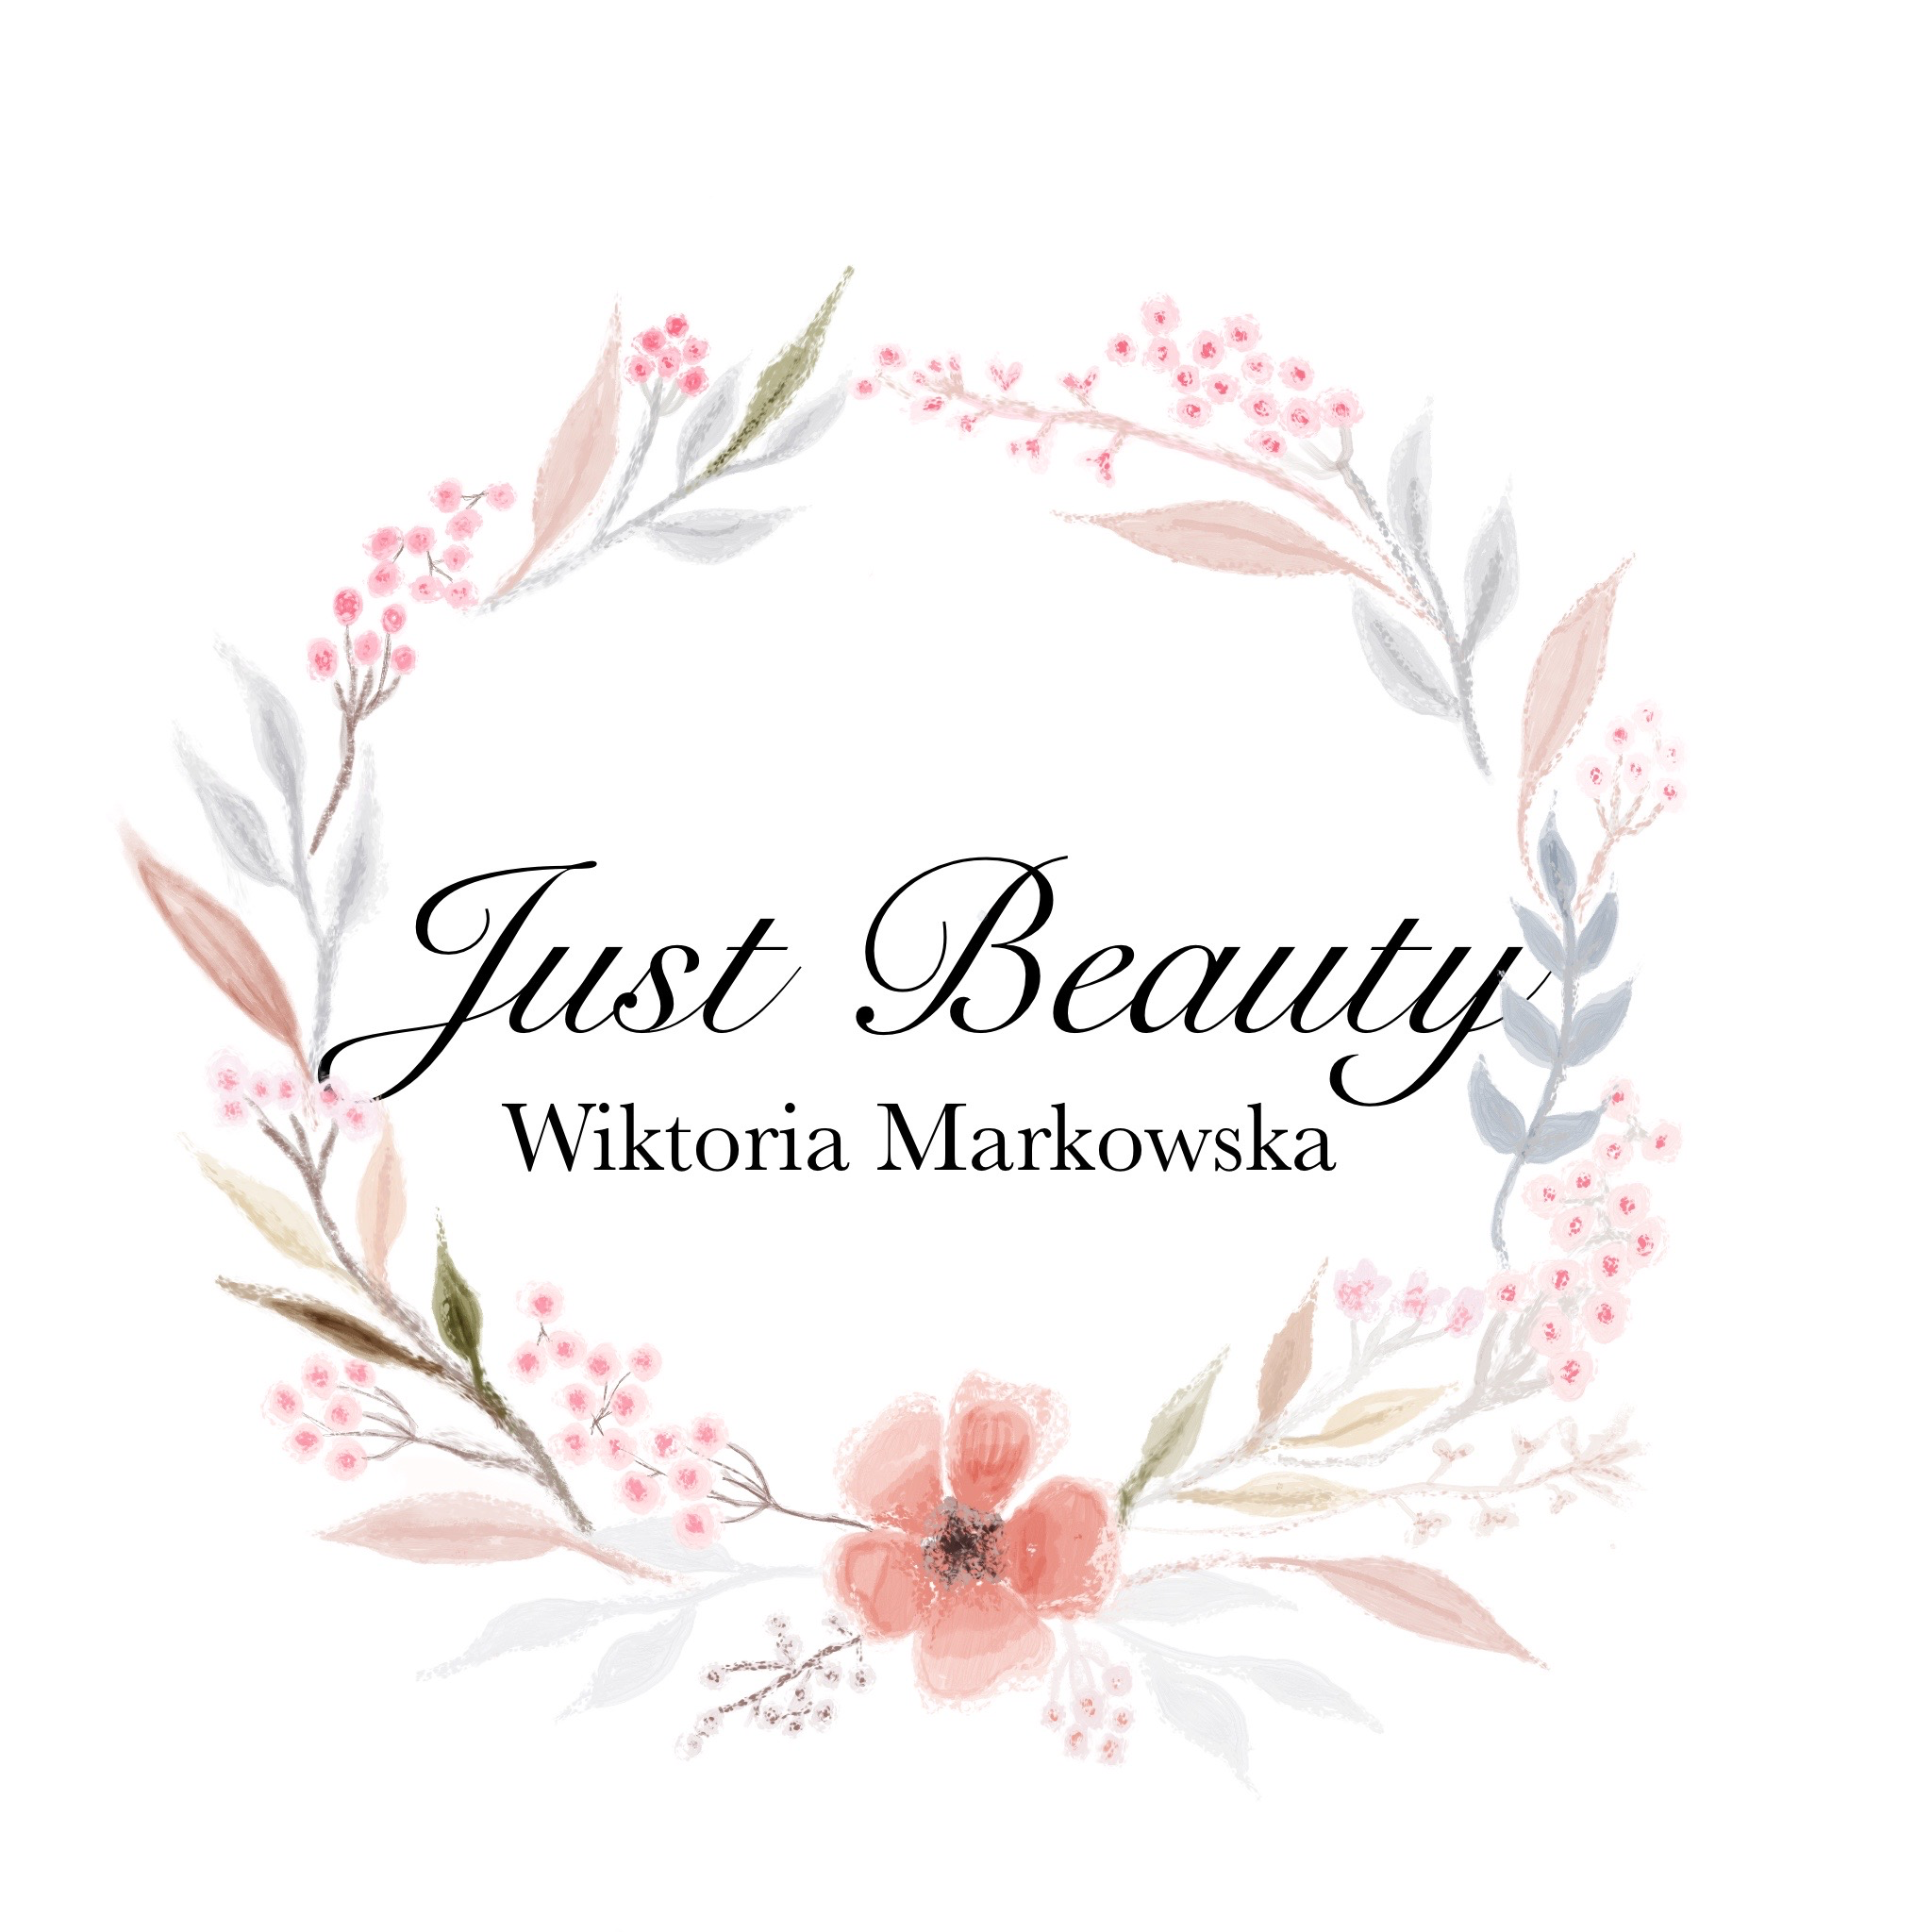 Just Beauty Wiktoria Markowska, Prof. Zdzisława Pidka 6, 23, 83-010, Pruszcz Gdański (Gmina)